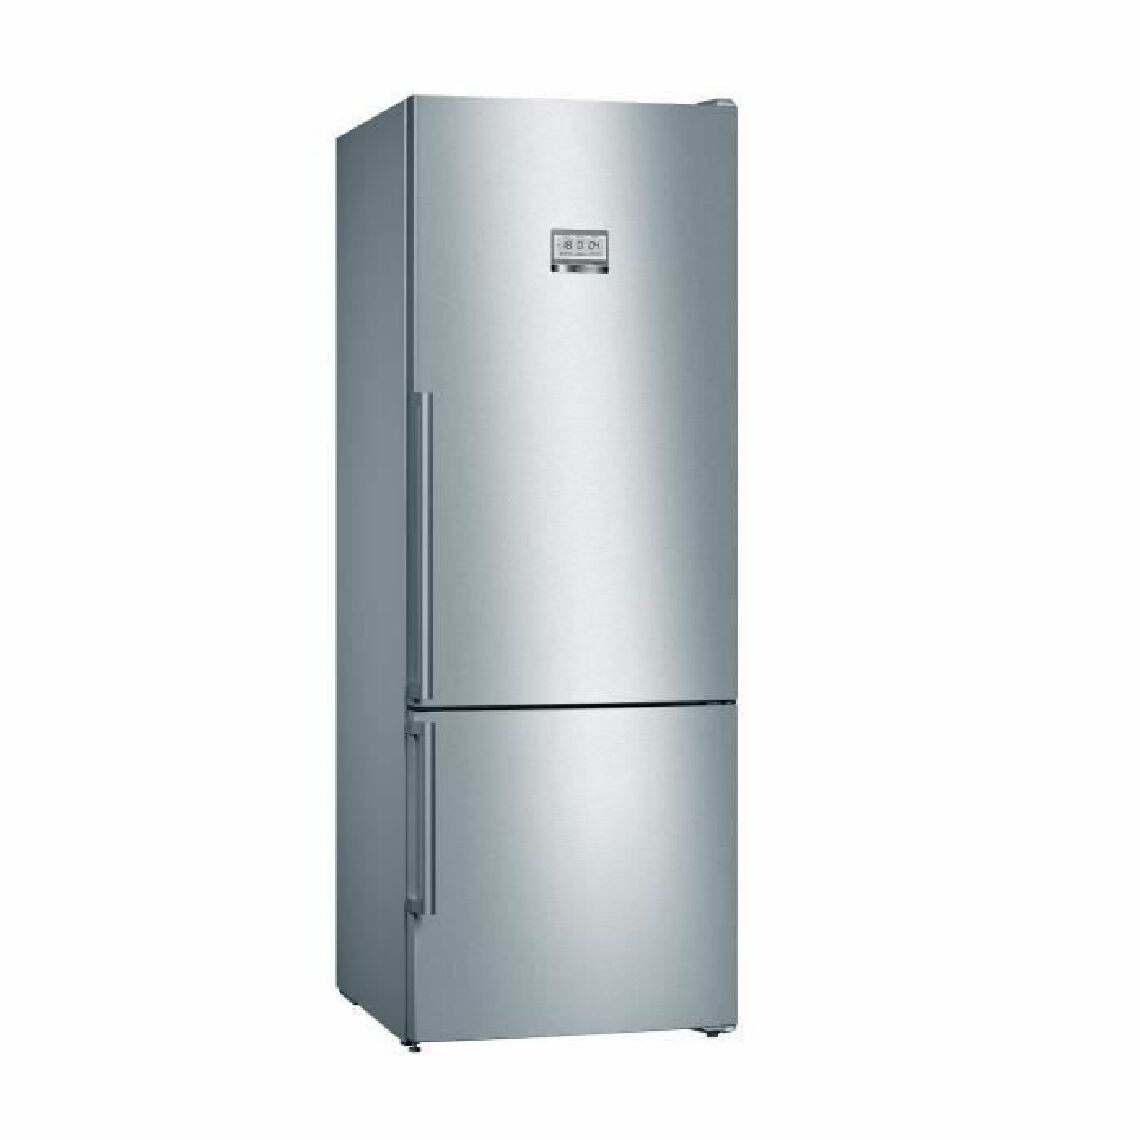 Bosch - BOSCH KGF56PIDP Réfrigérateur combiné - 480 L (375 L + 105 L)- NoFrost MultiAirflow - A+++ - HxLxP 193 x 70 x 80 cm - Inox - Réfrigérateur